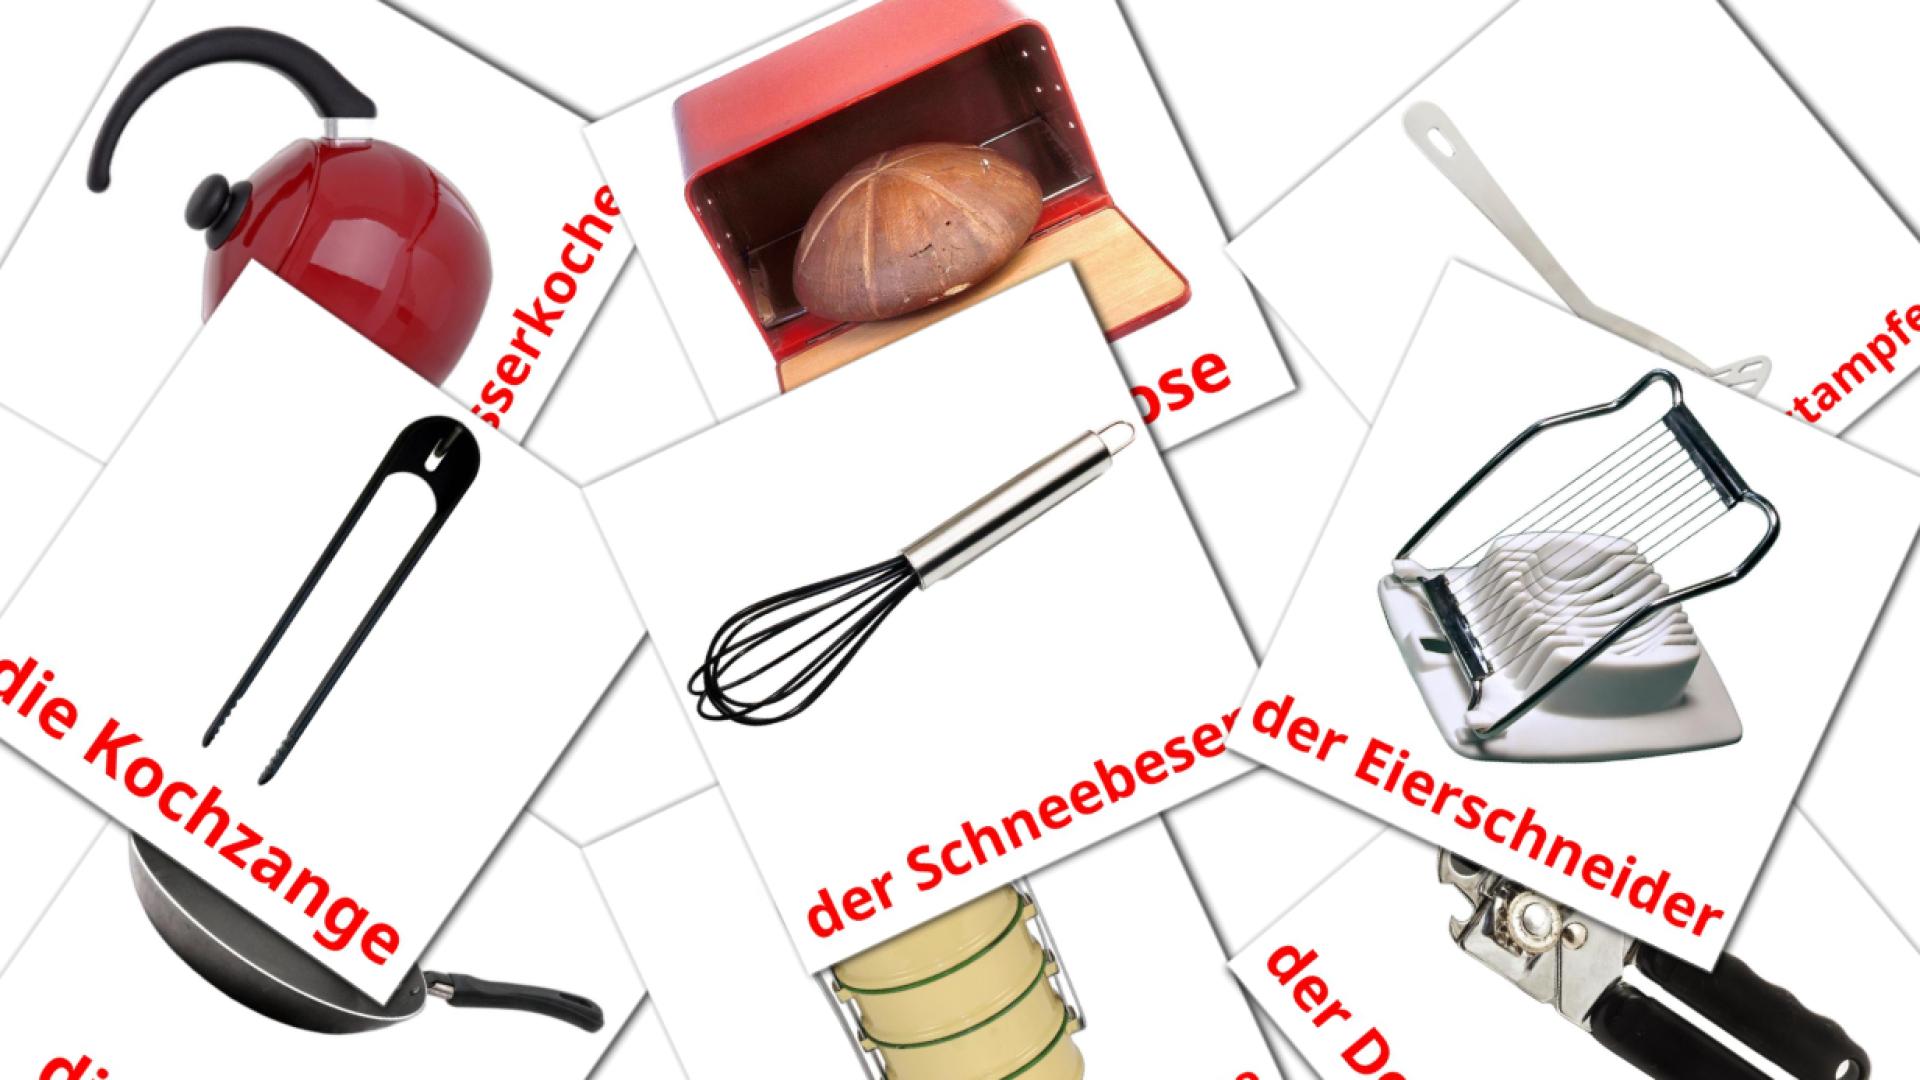 Utensilios de cocina - tarjetas de vocabulario en alemán